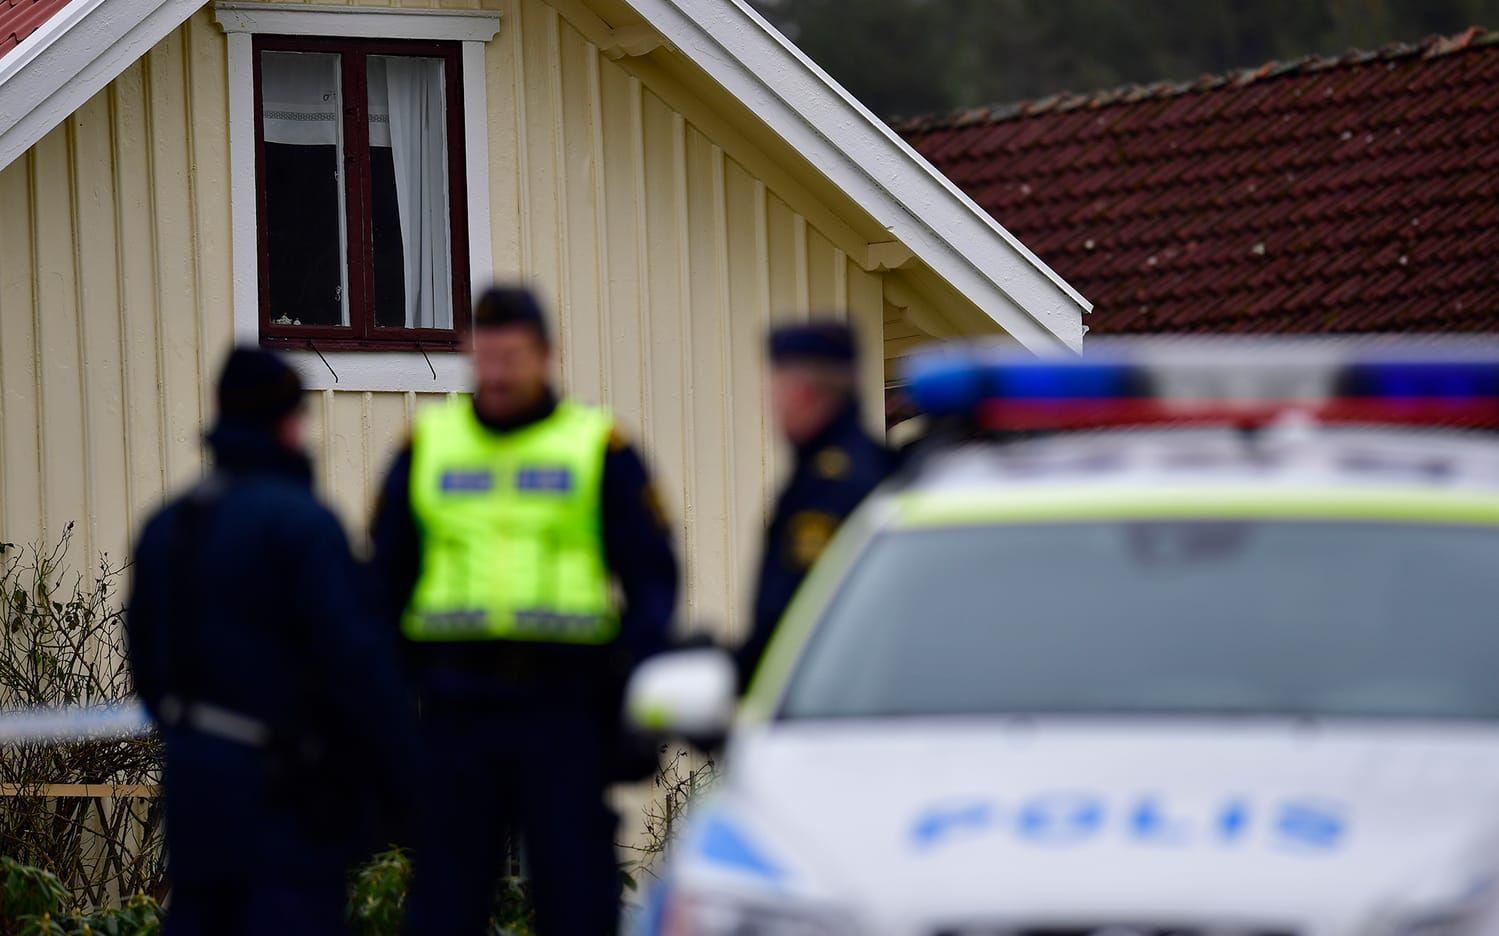 En kvinna hittades död i ett hus i Kungsbacka under tisdagseftermiddagen. Under natten mot onsdag anhölls en annan kvinna misstänkt för mord. FOTO: Robin Aron